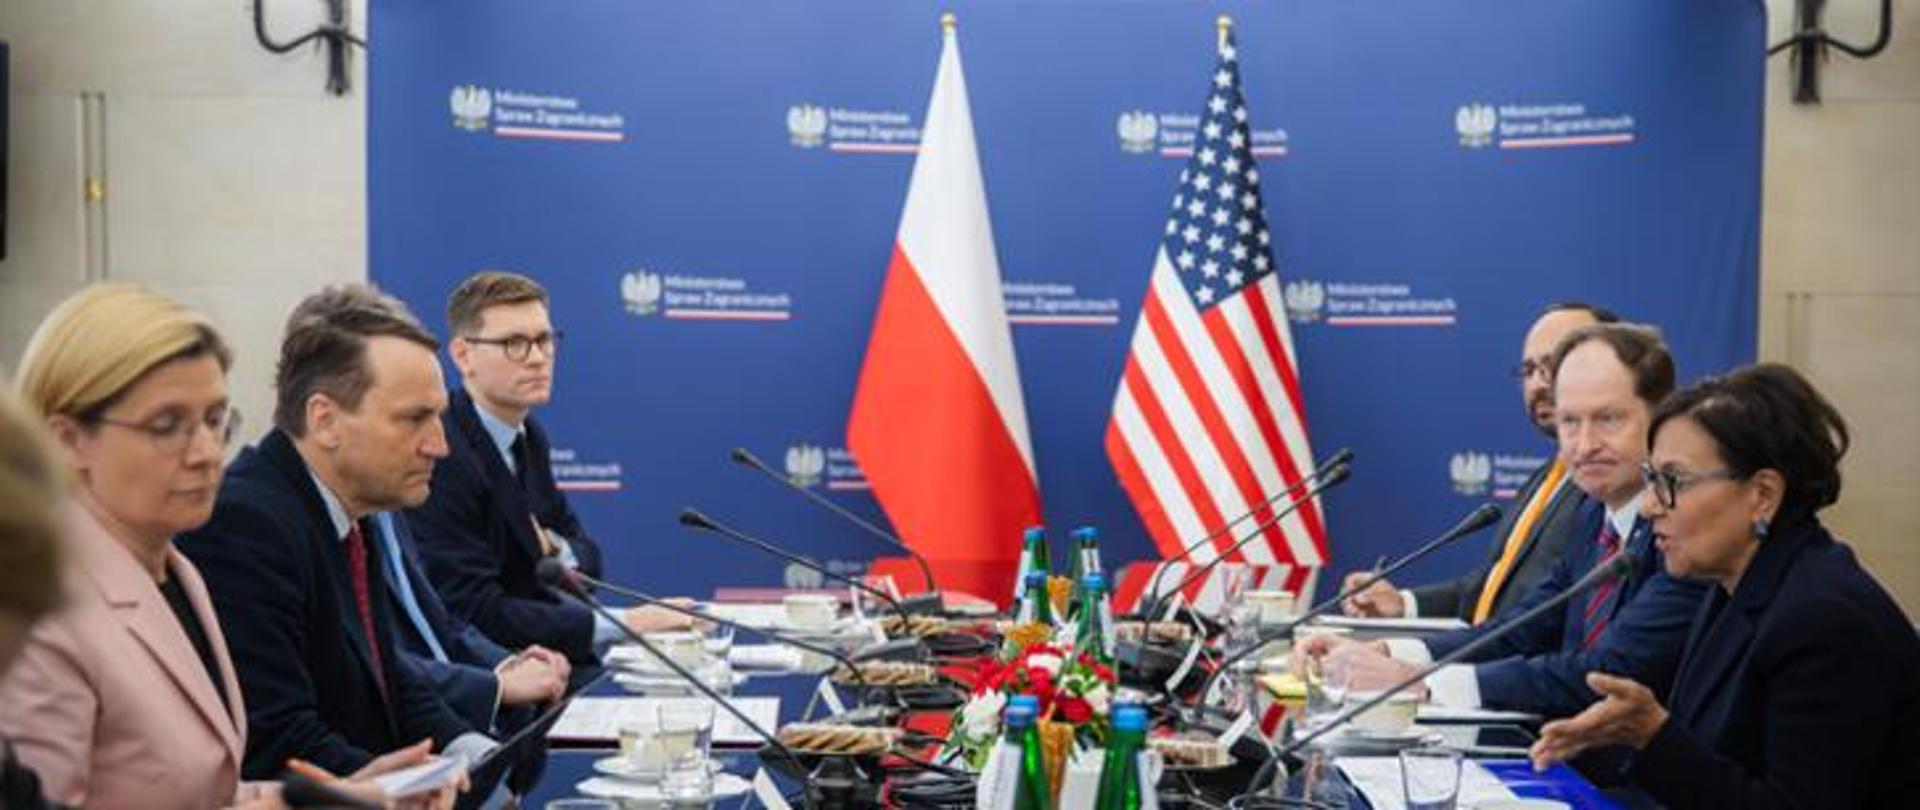 Ludzie siedzą po dwóch stronach stołu. W tle jest flaga polska i flaga Stanów Zjednoczonych. 